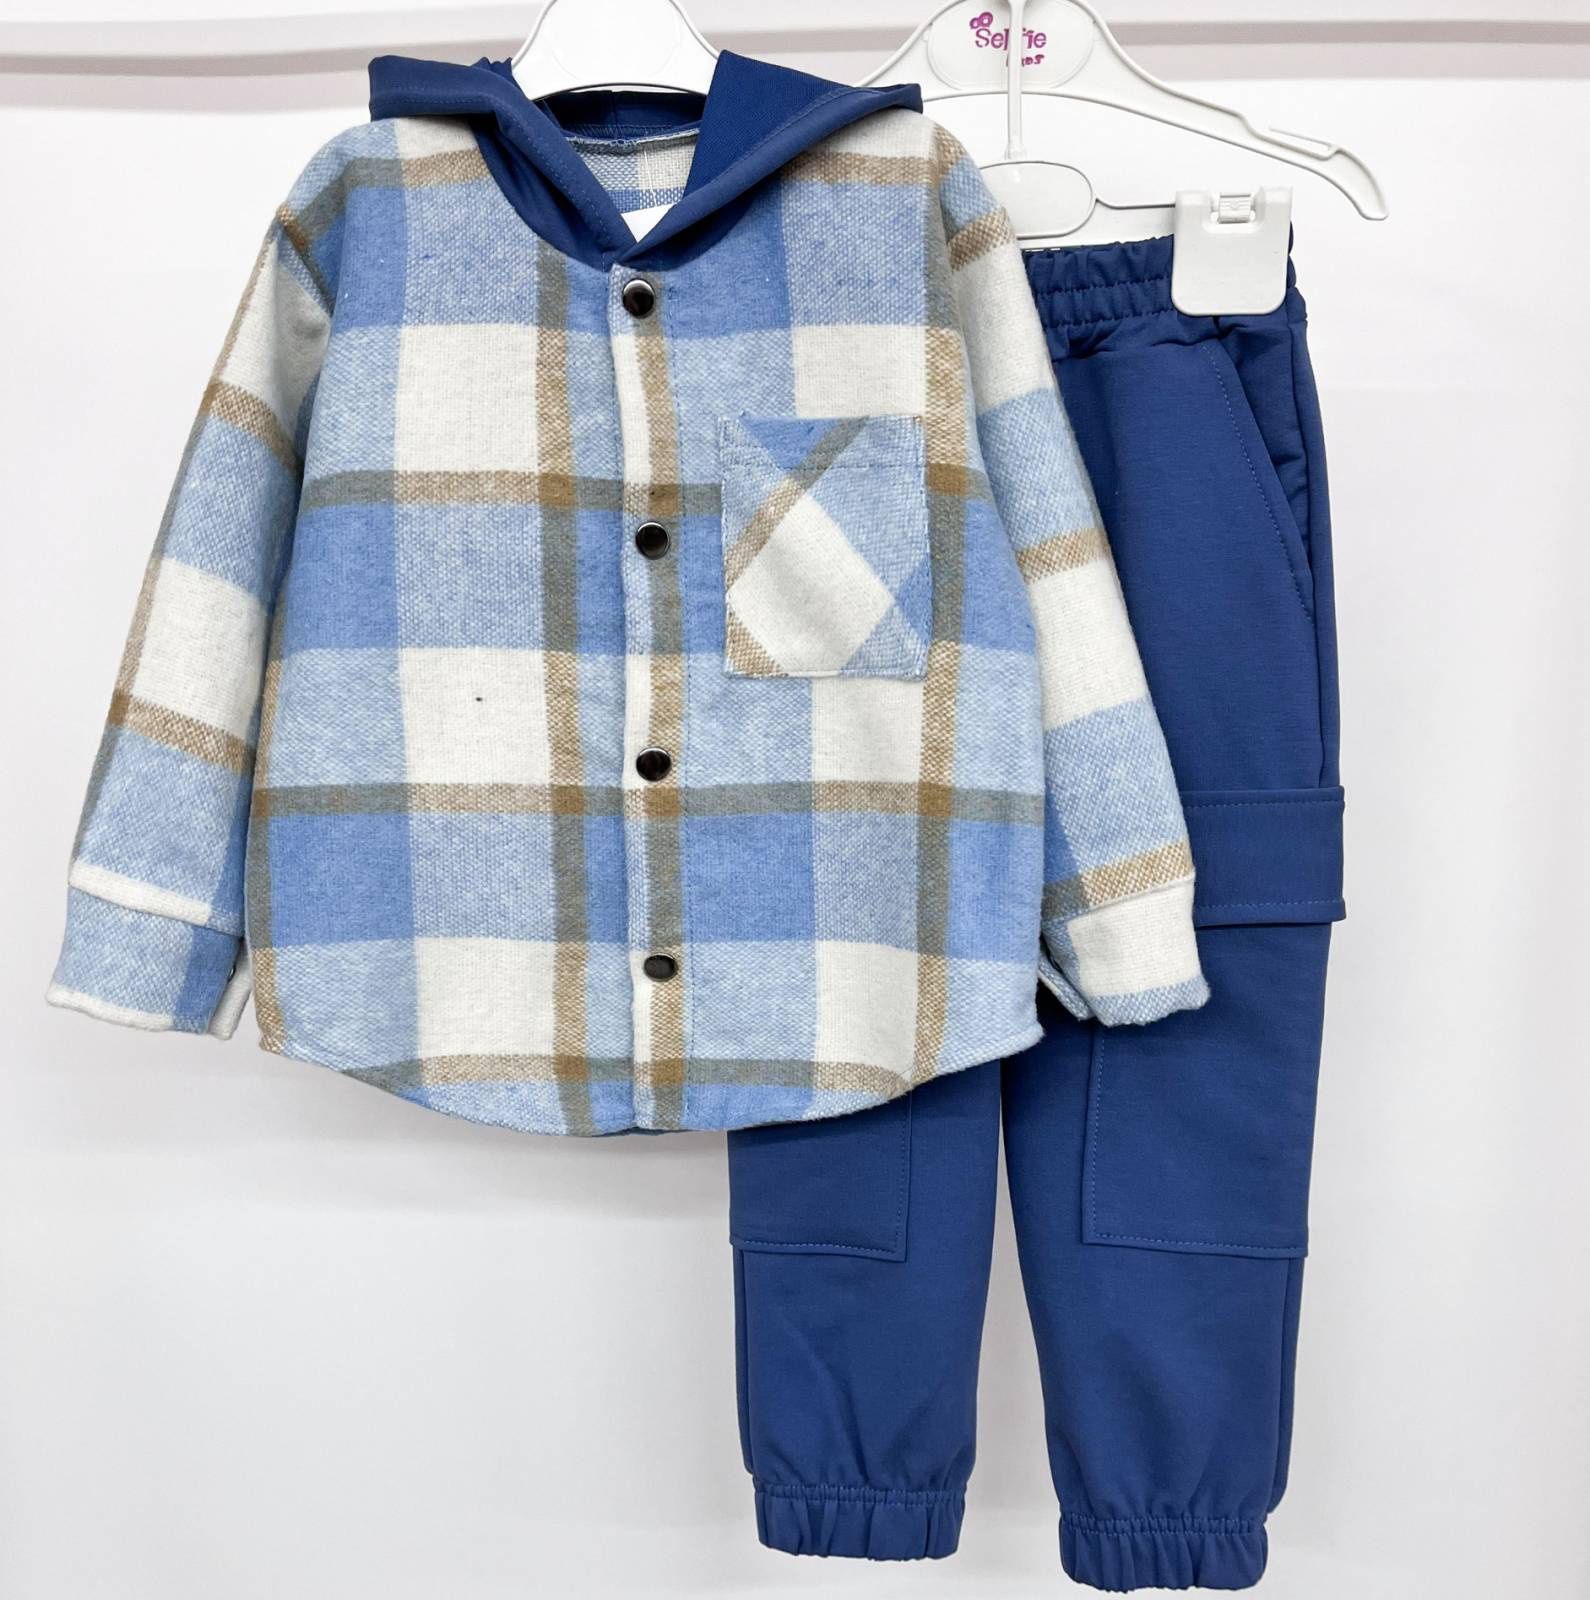 86-158см Стильний дитячий костюм для хлопчика. Сорочка і штани